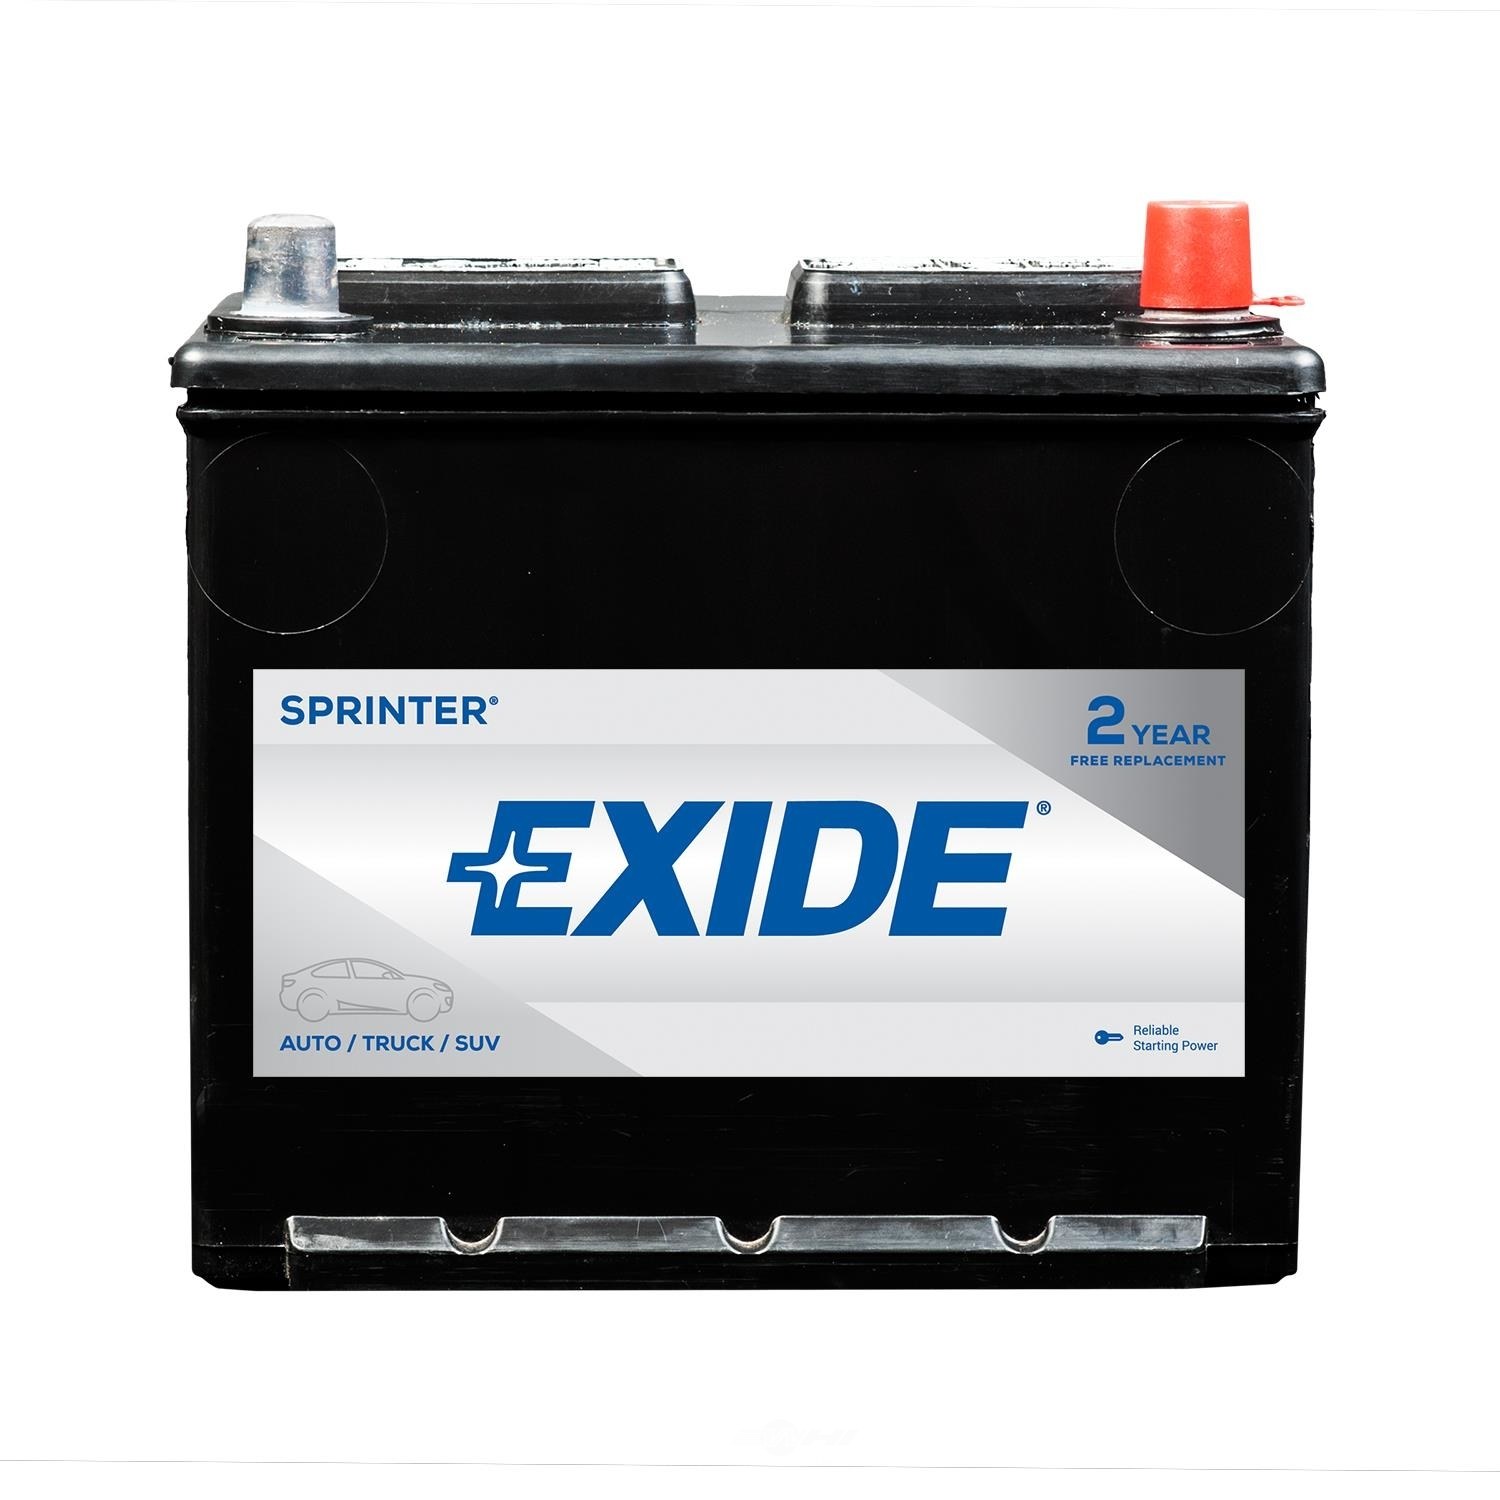 EXIDE BATTERIES - SPRINTER - CCA: 600 - EX1 S121R